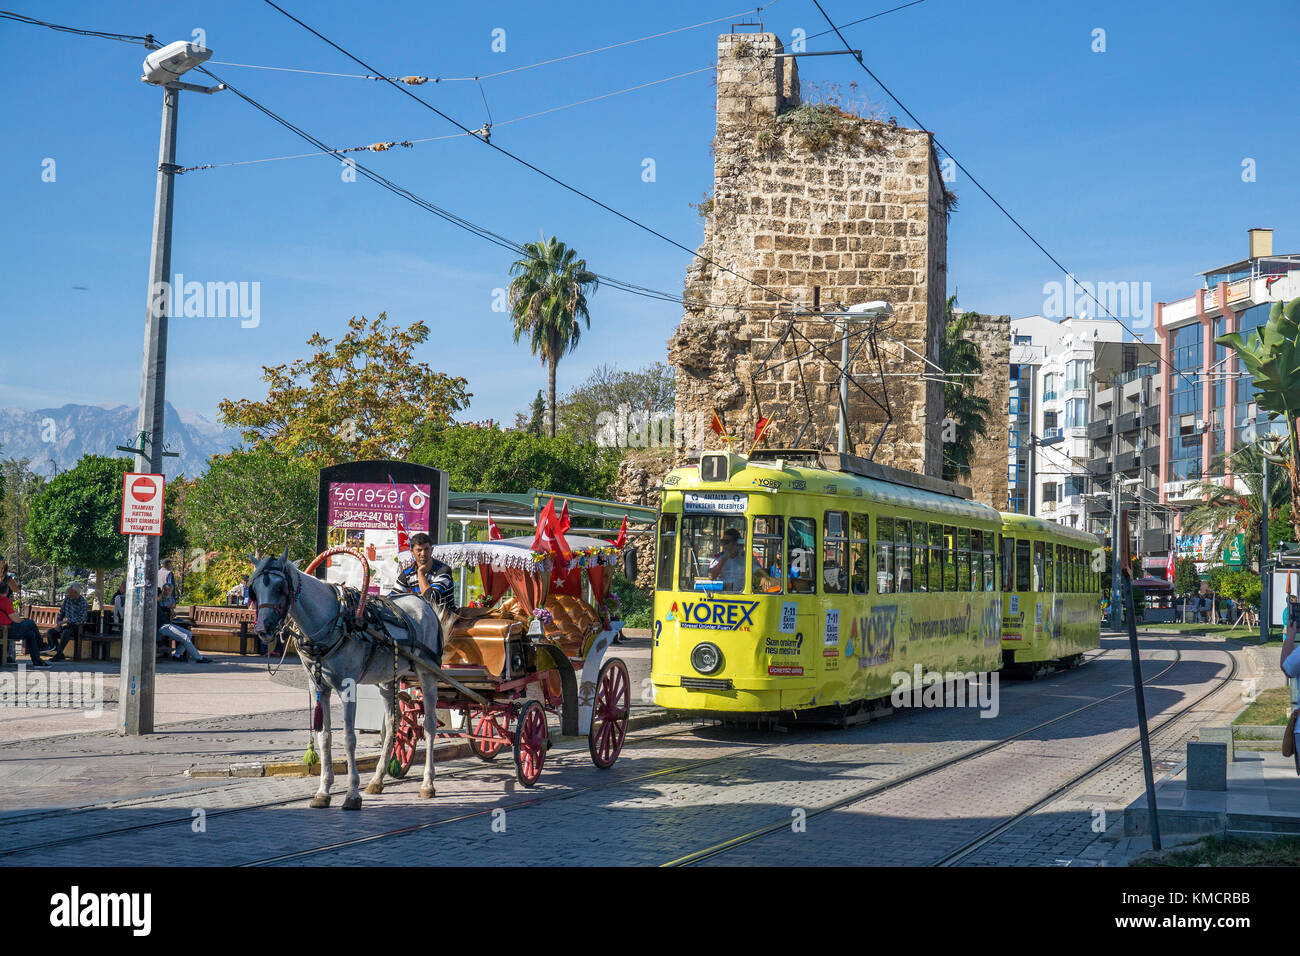 Dekoriert Pferdekutsche blockieren eine Straßenbahn am Kalekapisi Station, obere Grenze zu Kaleici, der Altstadt von Antalya, Türkische Riviera, Türkei Stockfoto